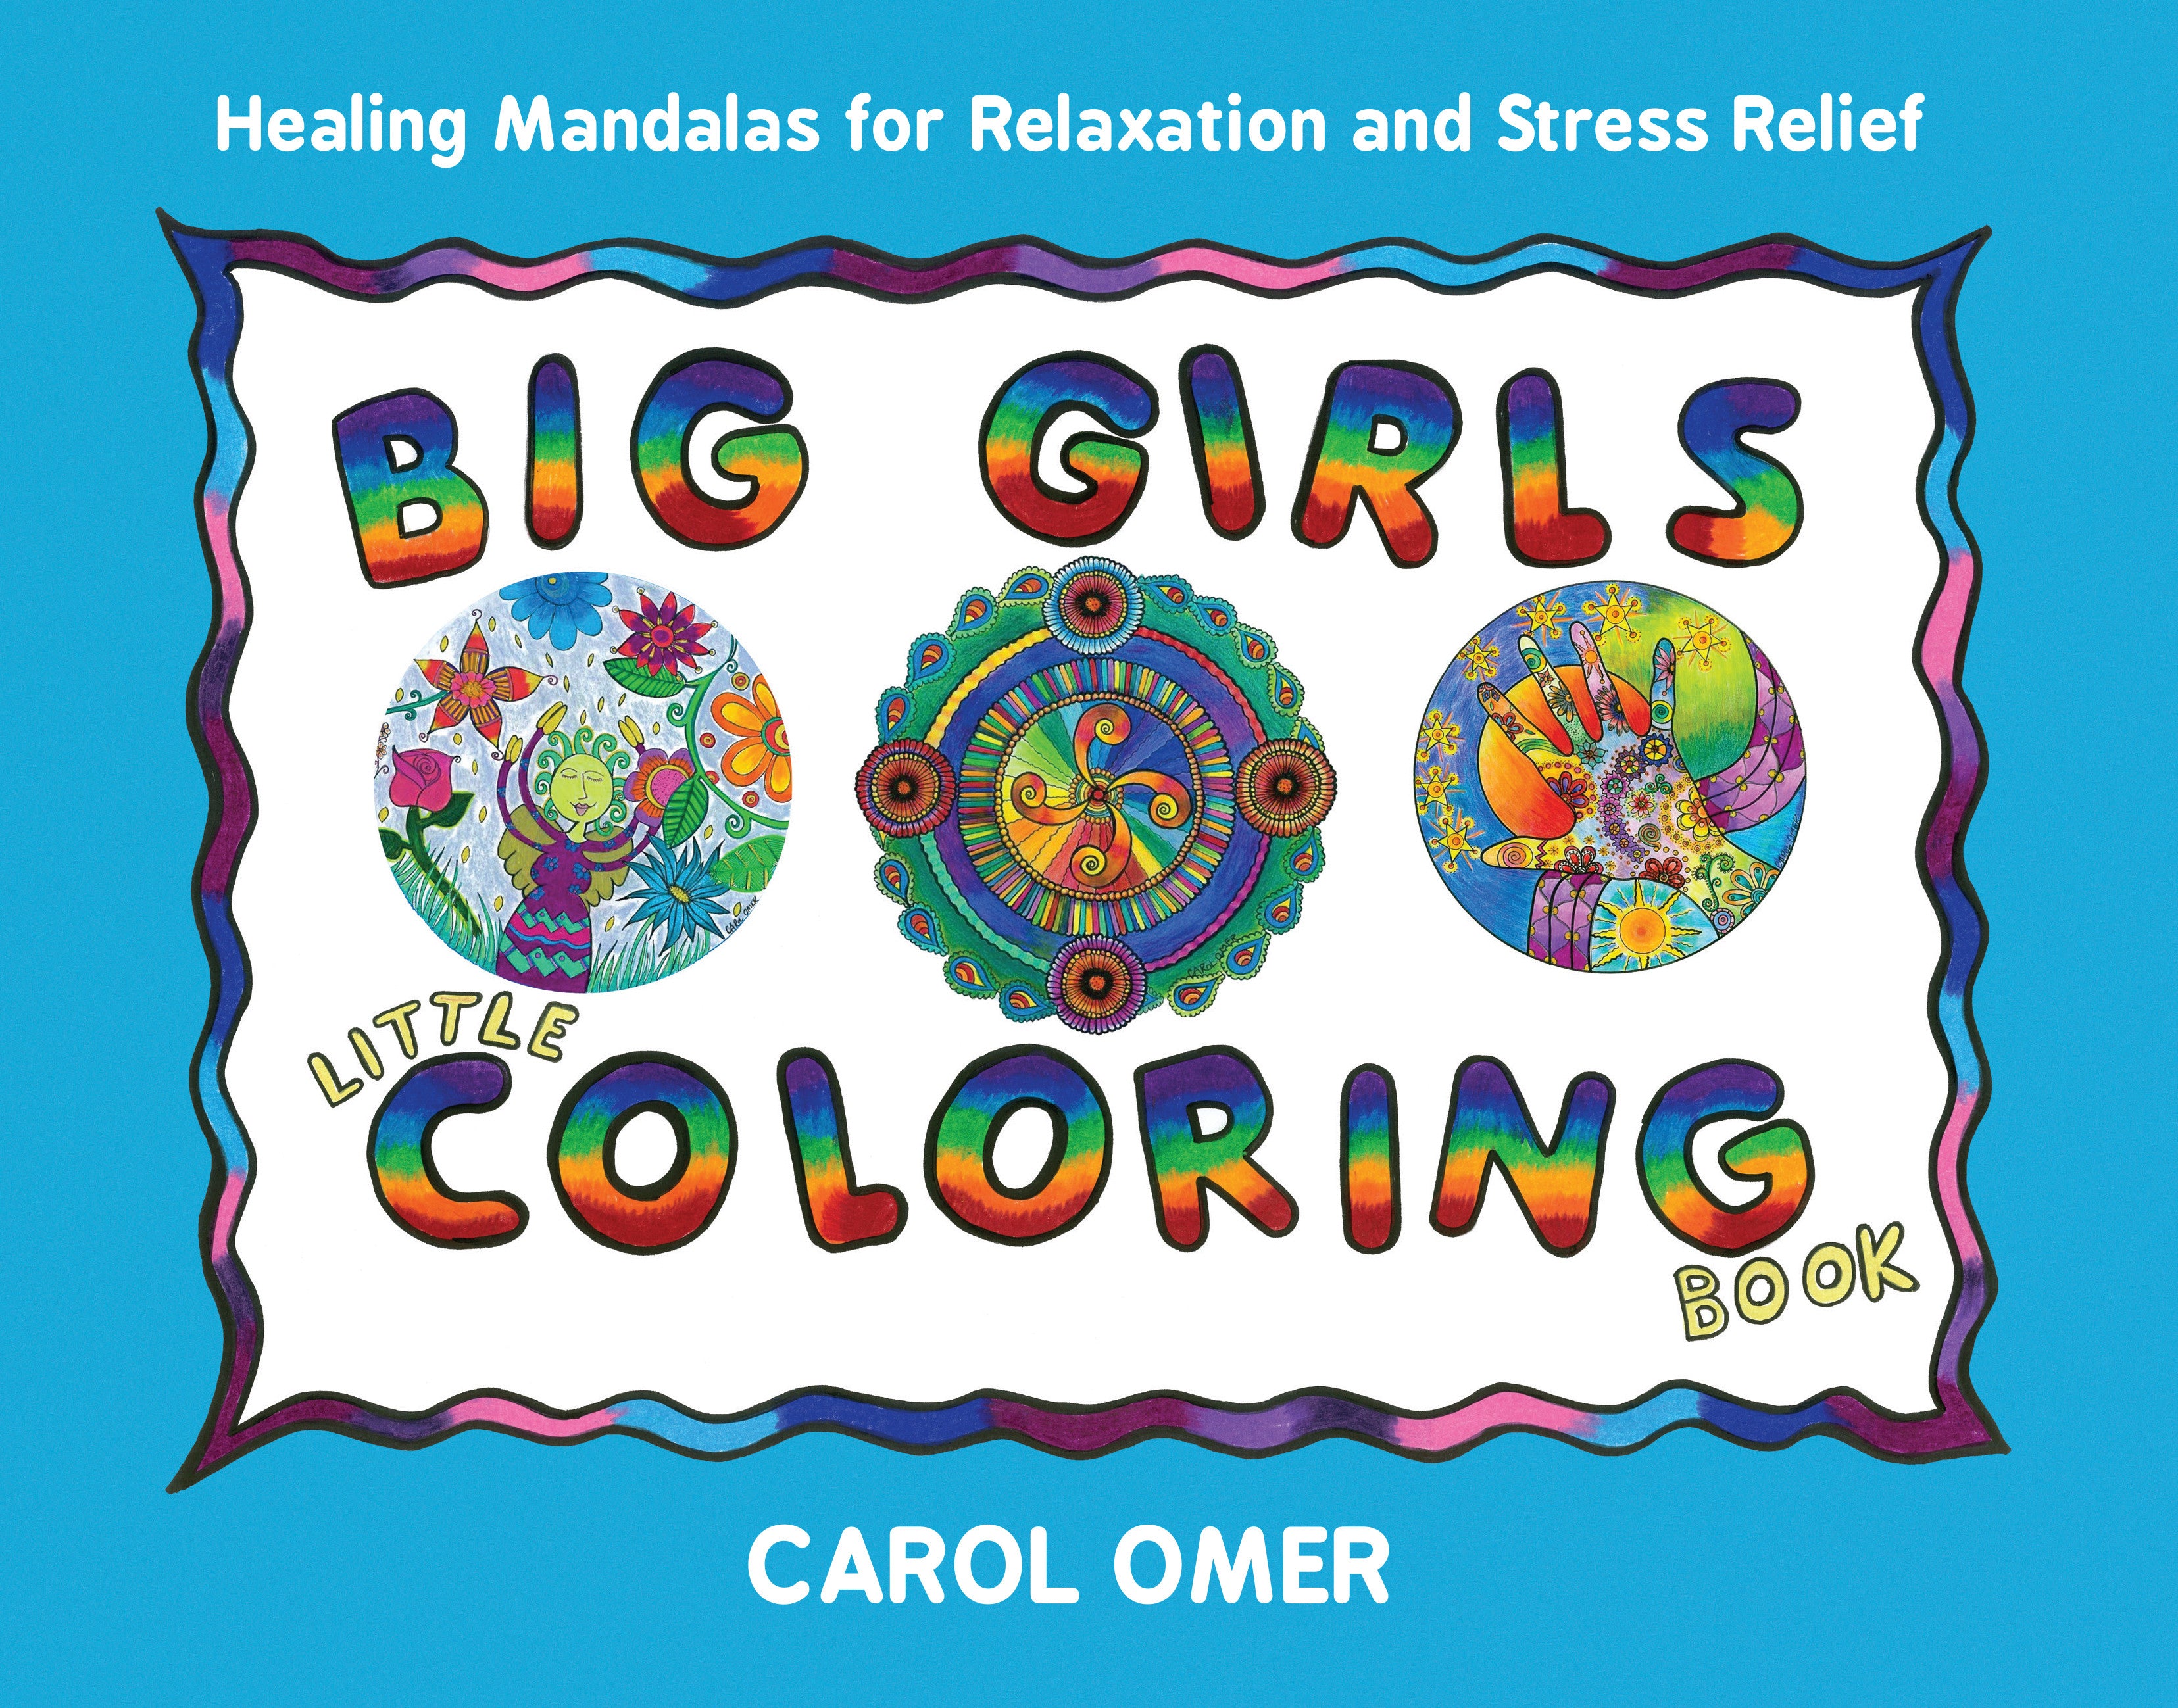 Mandla Coloring Book For Teens: Mandala Coloring Book for Teens Big  Mandalas To Color For Relaxation (Paperback)